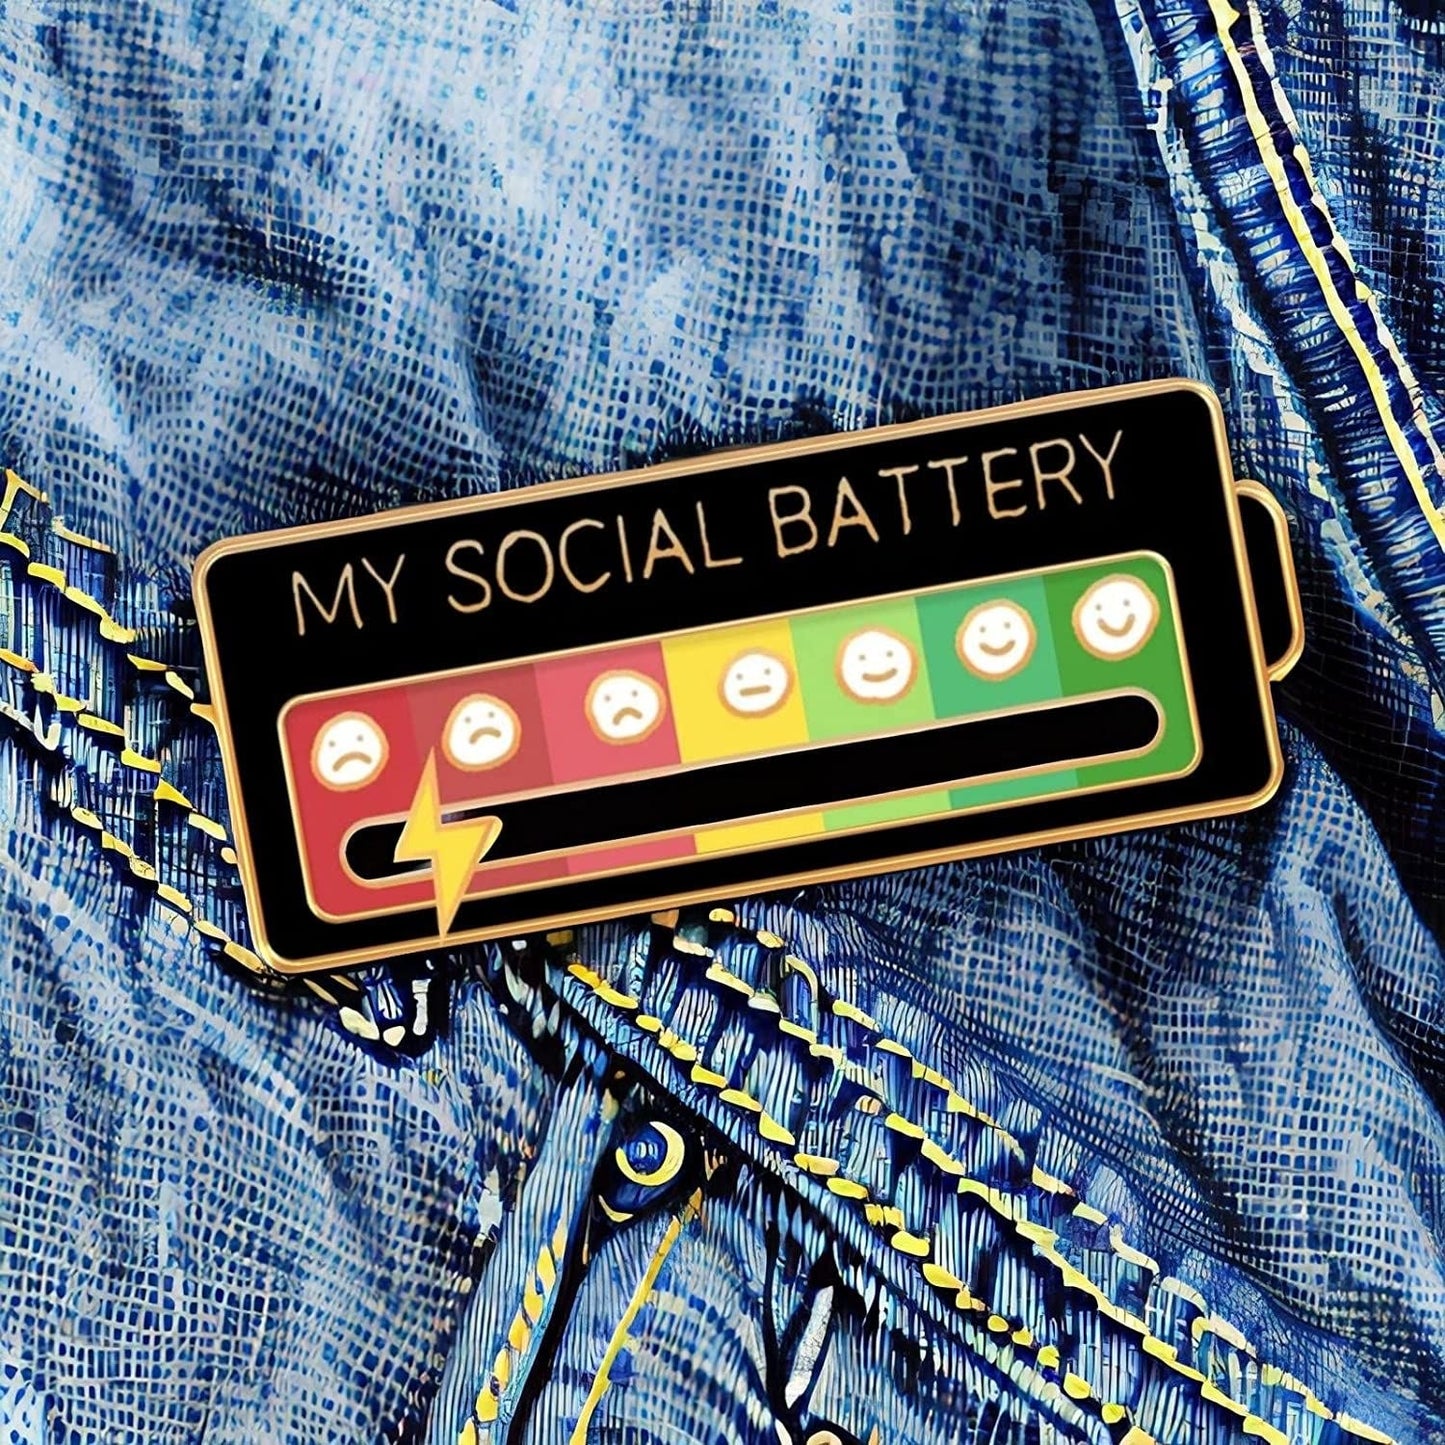 Sliding Brooch 'My Social Battery' Pin